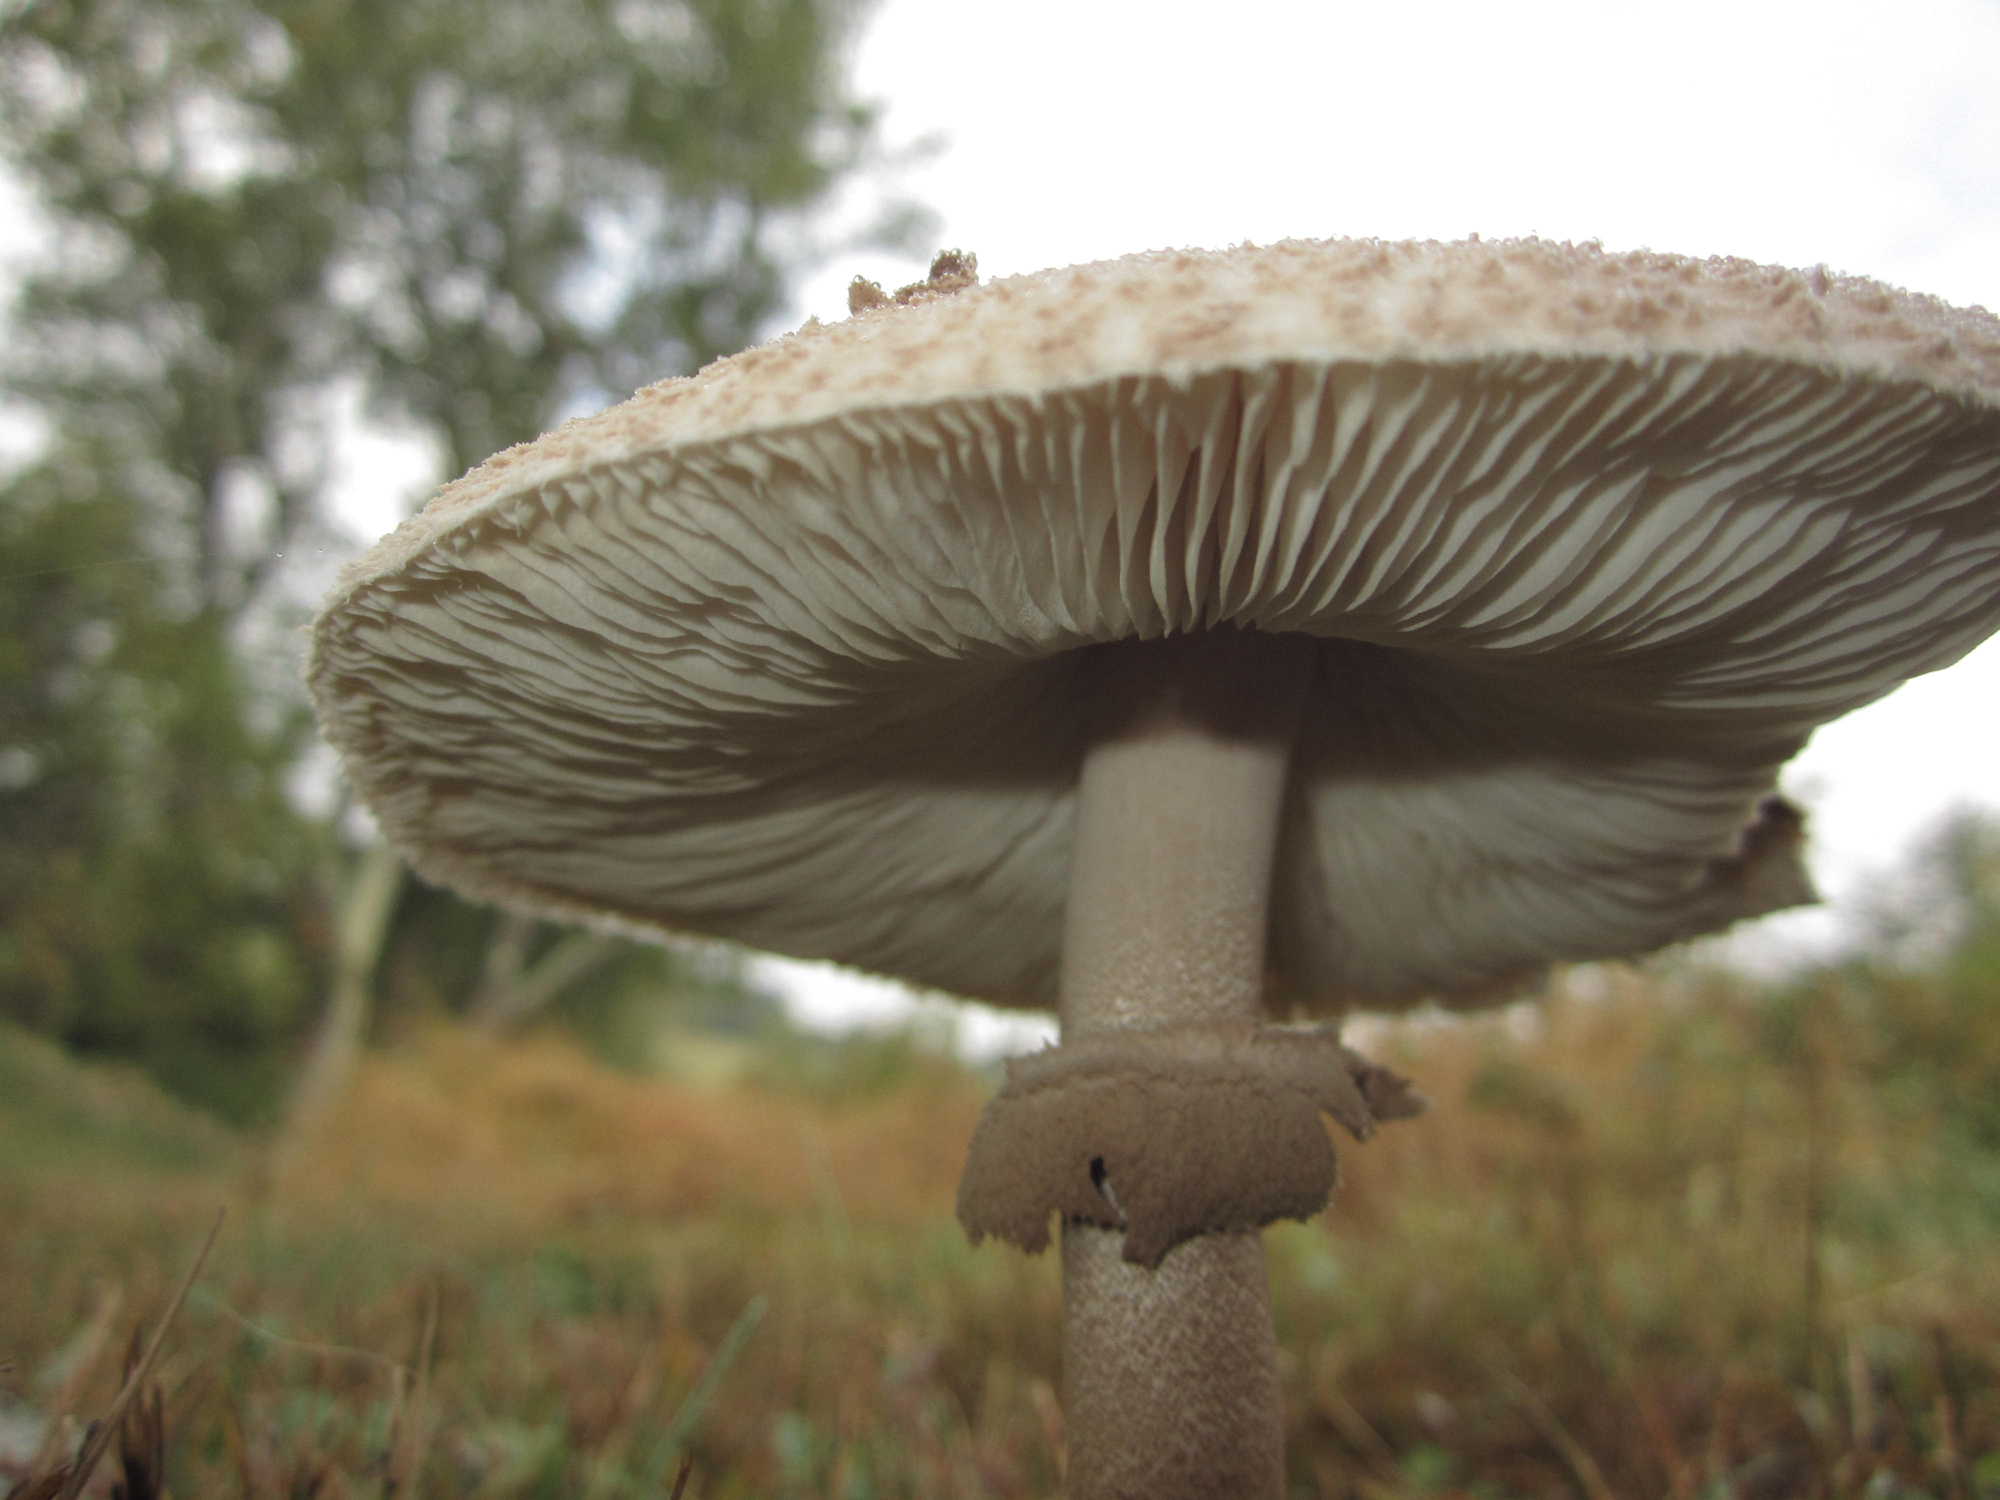 Mushroom Molds - Small Parasol